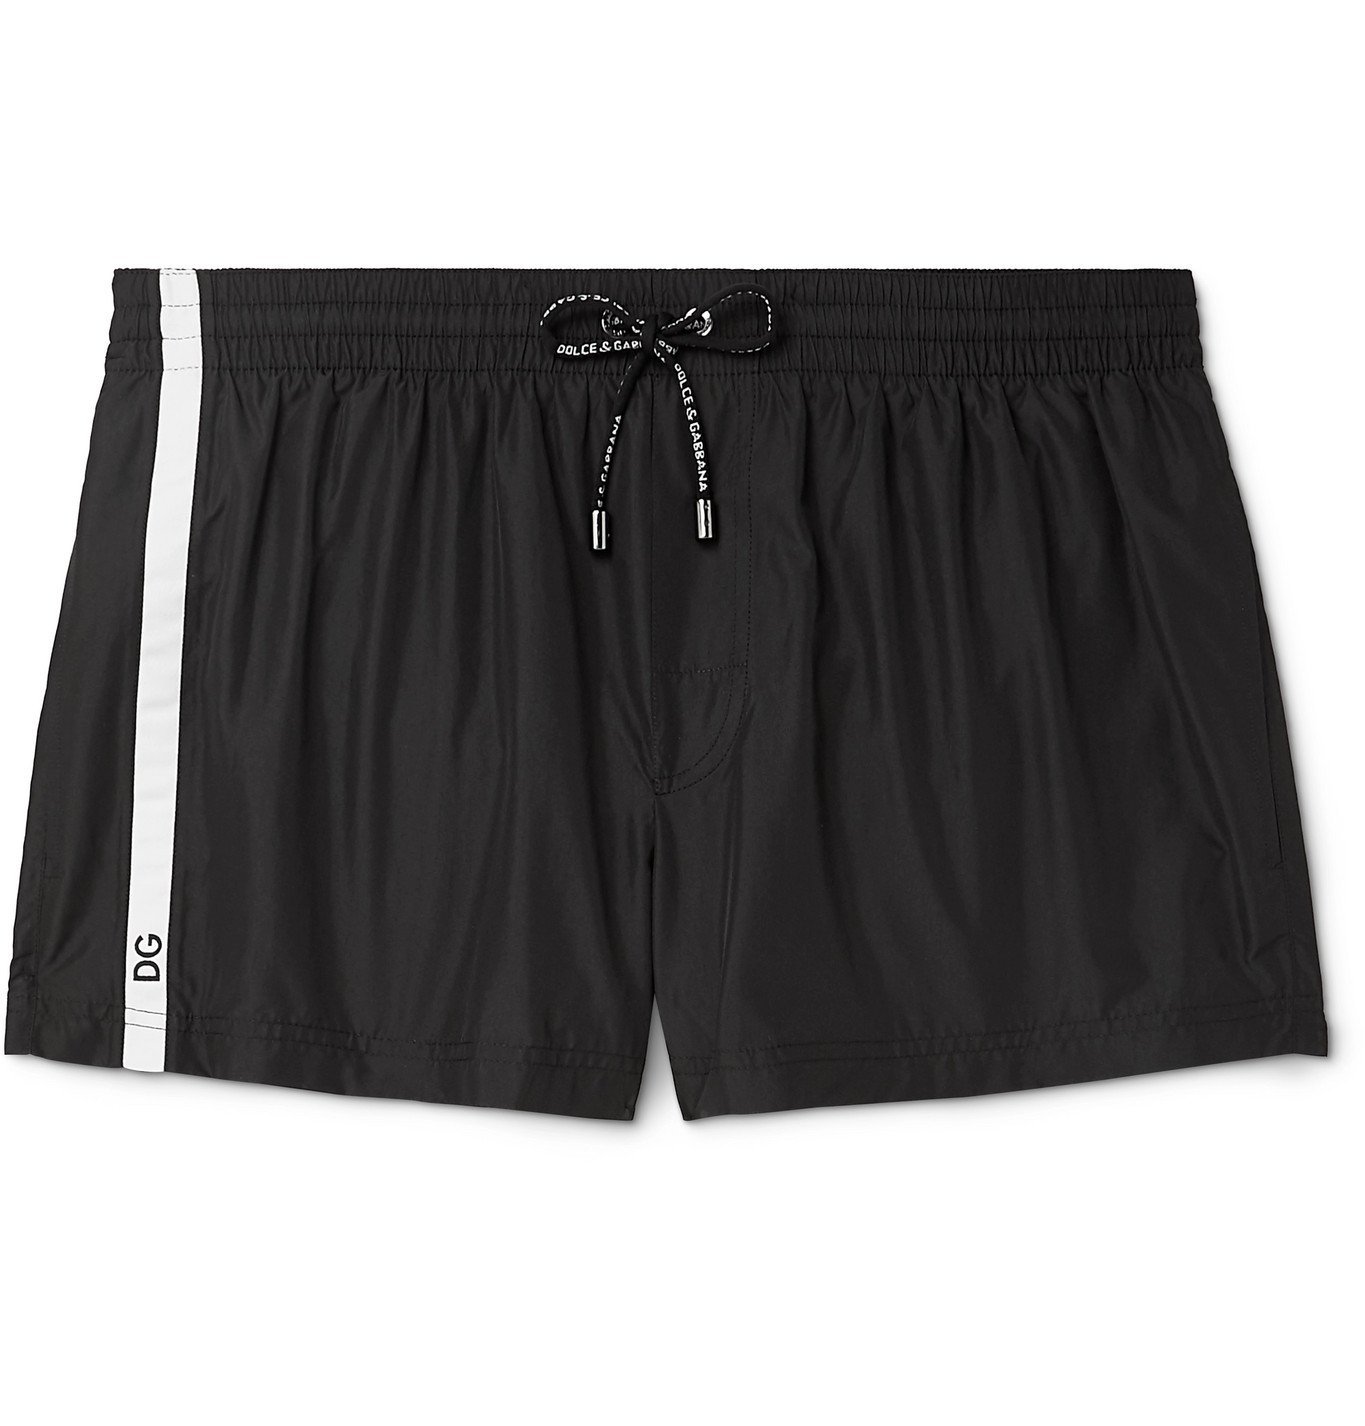 Dolce & Gabbana - Short-Length Striped Swim Shorts - Black Dolce & Gabbana